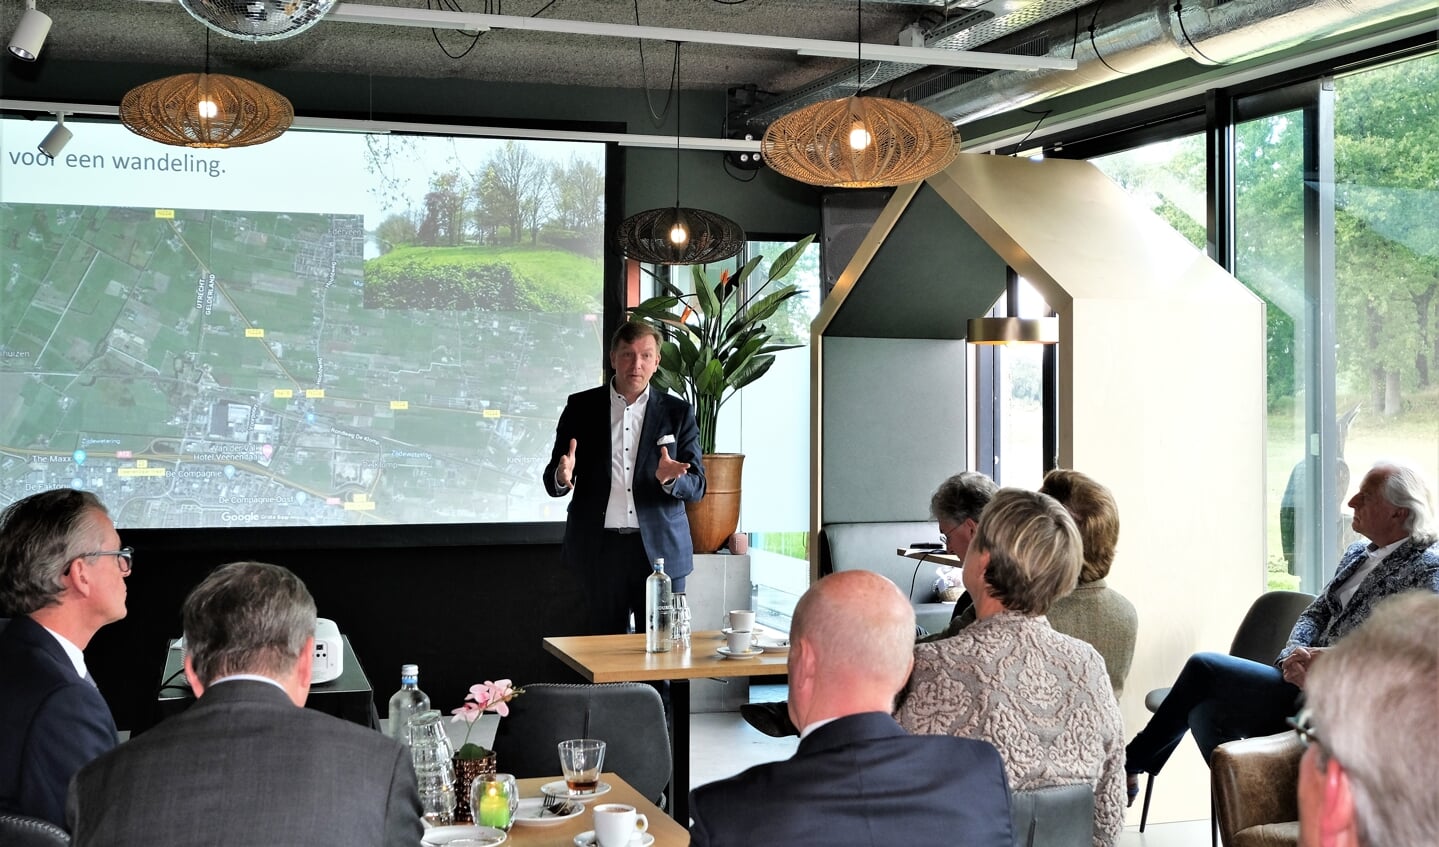 Burgemeester Gert-Jan Kats was gastheer en vertelde over de toekomstplannen van Veenendaal en de regio.